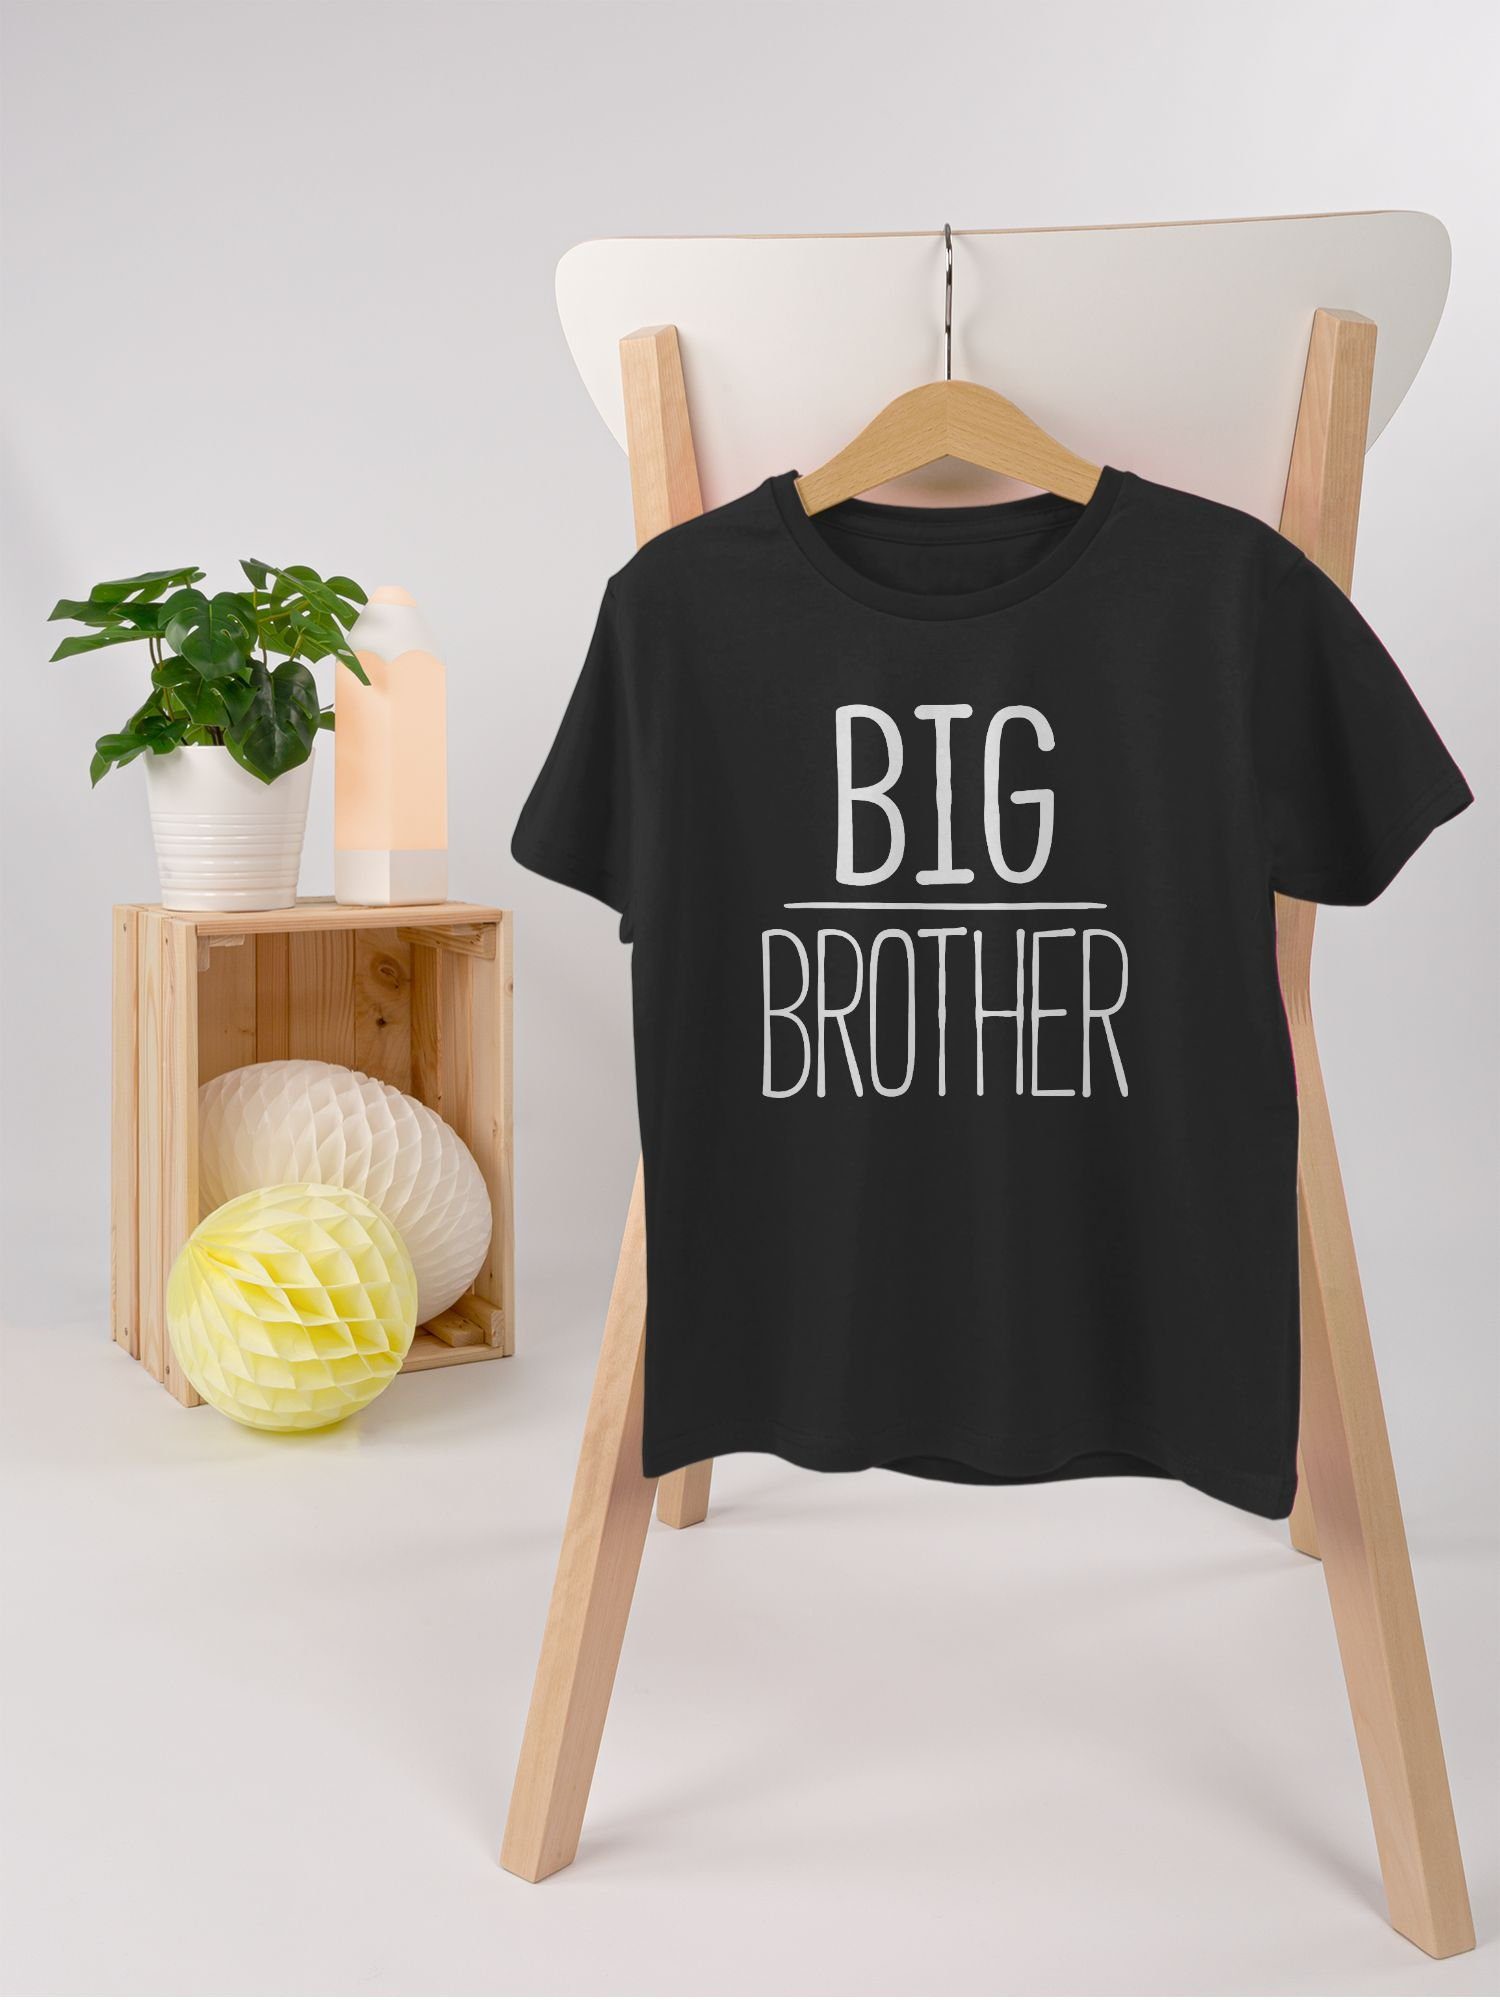 Shirtracer 1 Big Brother Schwarz Bruder T-Shirt Großer